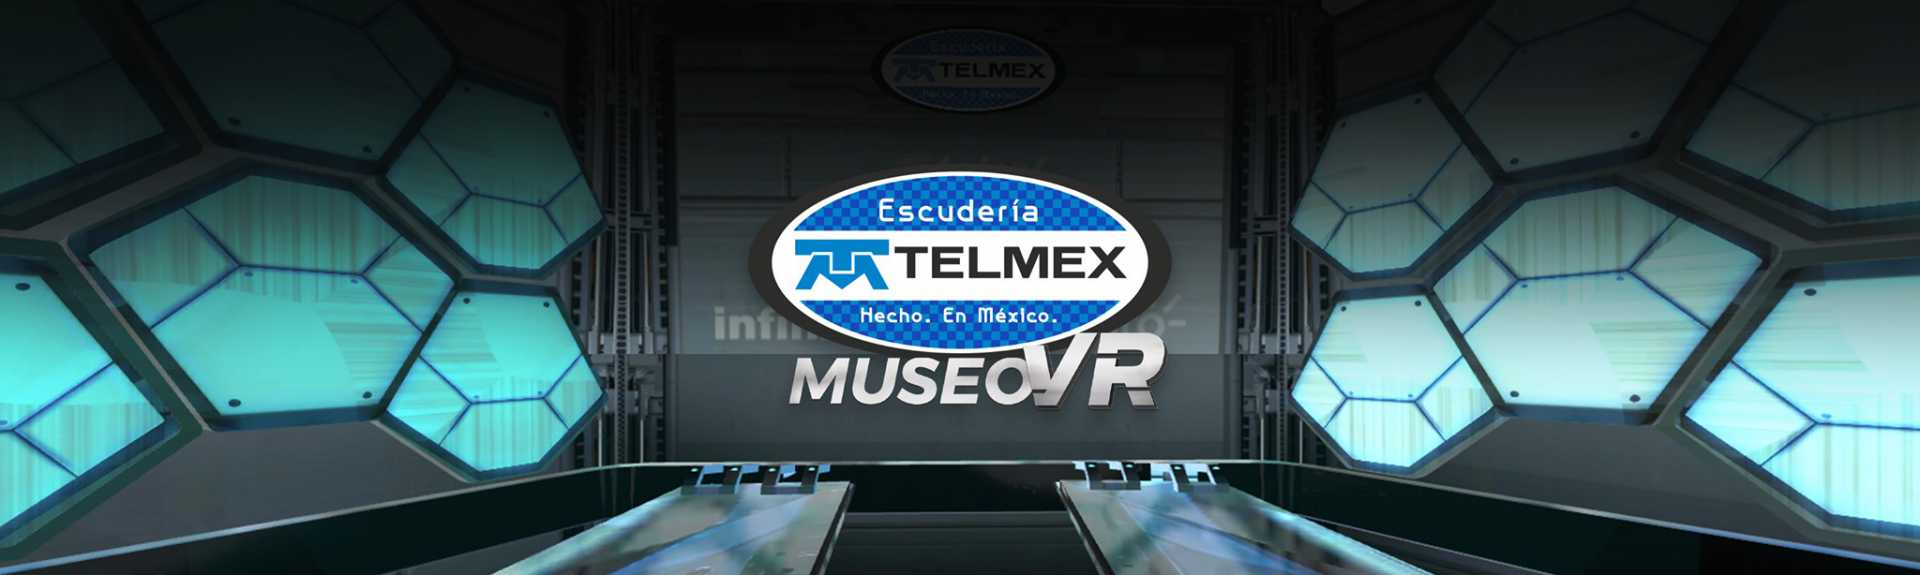 Escudería Telmex Museo VR